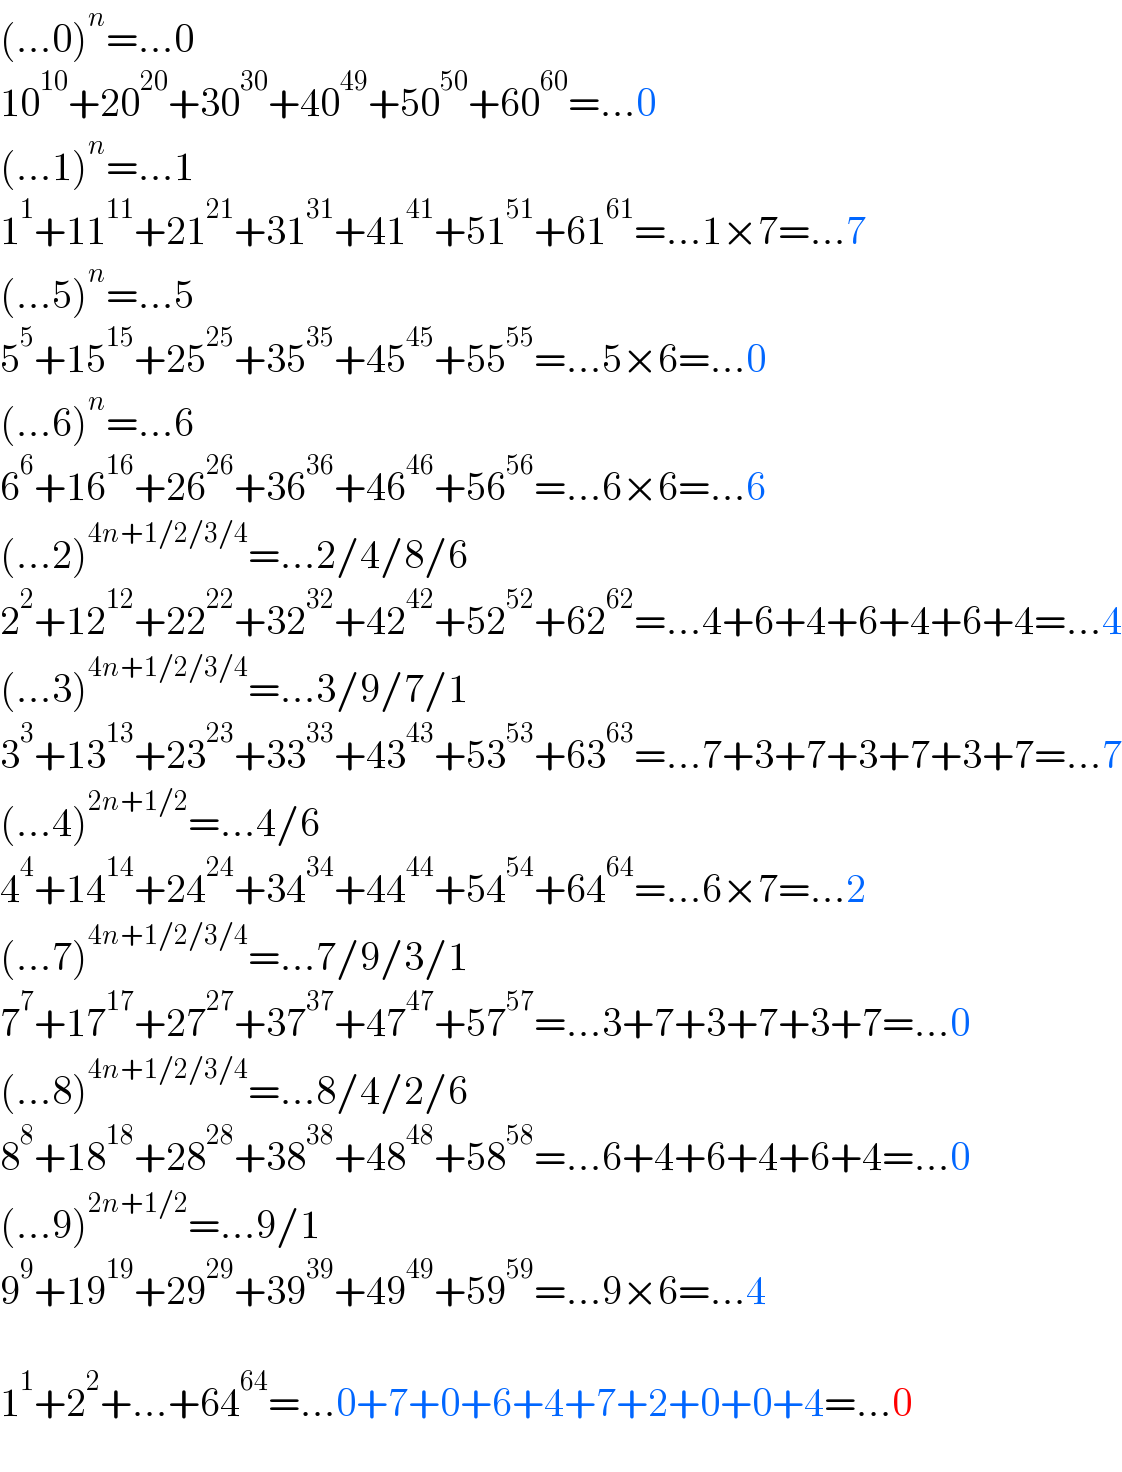 (...0)^n =...0  10^(10) +20^(20) +30^(30) +40^(49) +50^(50) +60^(60) =...0  (...1)^n =...1  1^1 +11^(11) +21^(21) +31^(31) +41^(41) +51^(51) +61^(61) =...1×7=...7  (...5)^n =...5  5^5 +15^(15) +25^(25) +35^(35) +45^(45) +55^(55) =...5×6=...0  (...6)^n =...6  6^6 +16^(16) +26^(26) +36^(36) +46^(46) +56^(56) =...6×6=...6  (...2)^(4n+1/2/3/4) =...2/4/8/6  2^2 +12^(12) +22^(22) +32^(32) +42^(42) +52^(52) +62^(62) =...4+6+4+6+4+6+4=...4  (...3)^(4n+1/2/3/4) =...3/9/7/1  3^3 +13^(13) +23^(23) +33^(33) +43^(43) +53^(53) +63^(63) =...7+3+7+3+7+3+7=...7  (...4)^(2n+1/2) =...4/6  4^4 +14^(14) +24^(24) +34^(34) +44^(44) +54^(54) +64^(64) =...6×7=...2  (...7)^(4n+1/2/3/4) =...7/9/3/1  7^7 +17^(17) +27^(27) +37^(37) +47^(47) +57^(57) =...3+7+3+7+3+7=...0  (...8)^(4n+1/2/3/4) =...8/4/2/6  8^8 +18^(18) +28^(28) +38^(38) +48^(48) +58^(58) =...6+4+6+4+6+4=...0  (...9)^(2n+1/2) =...9/1  9^9 +19^(19) +29^(29) +39^(39) +49^(49) +59^(59) =...9×6=...4    1^1 +2^2 +...+64^(64) =...0+7+0+6+4+7+2+0+0+4=...0  